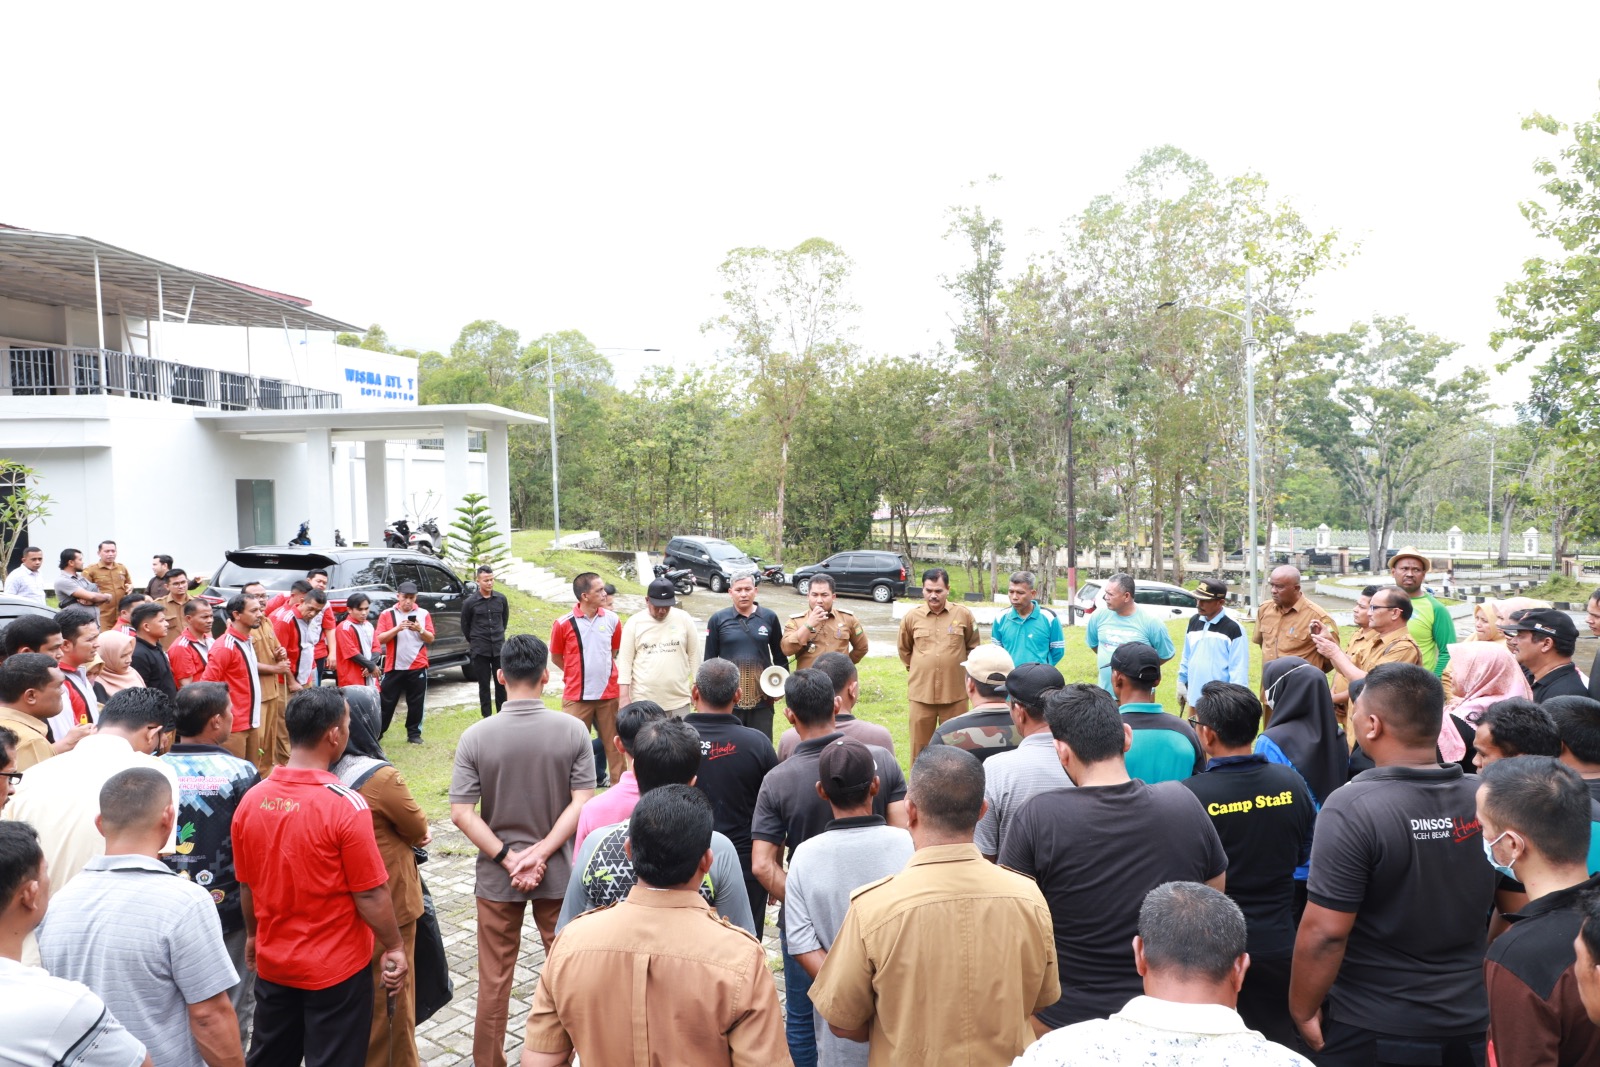 Pj Bupati Aceh Besar Ikut Gotong Royong di Wisma Atlet